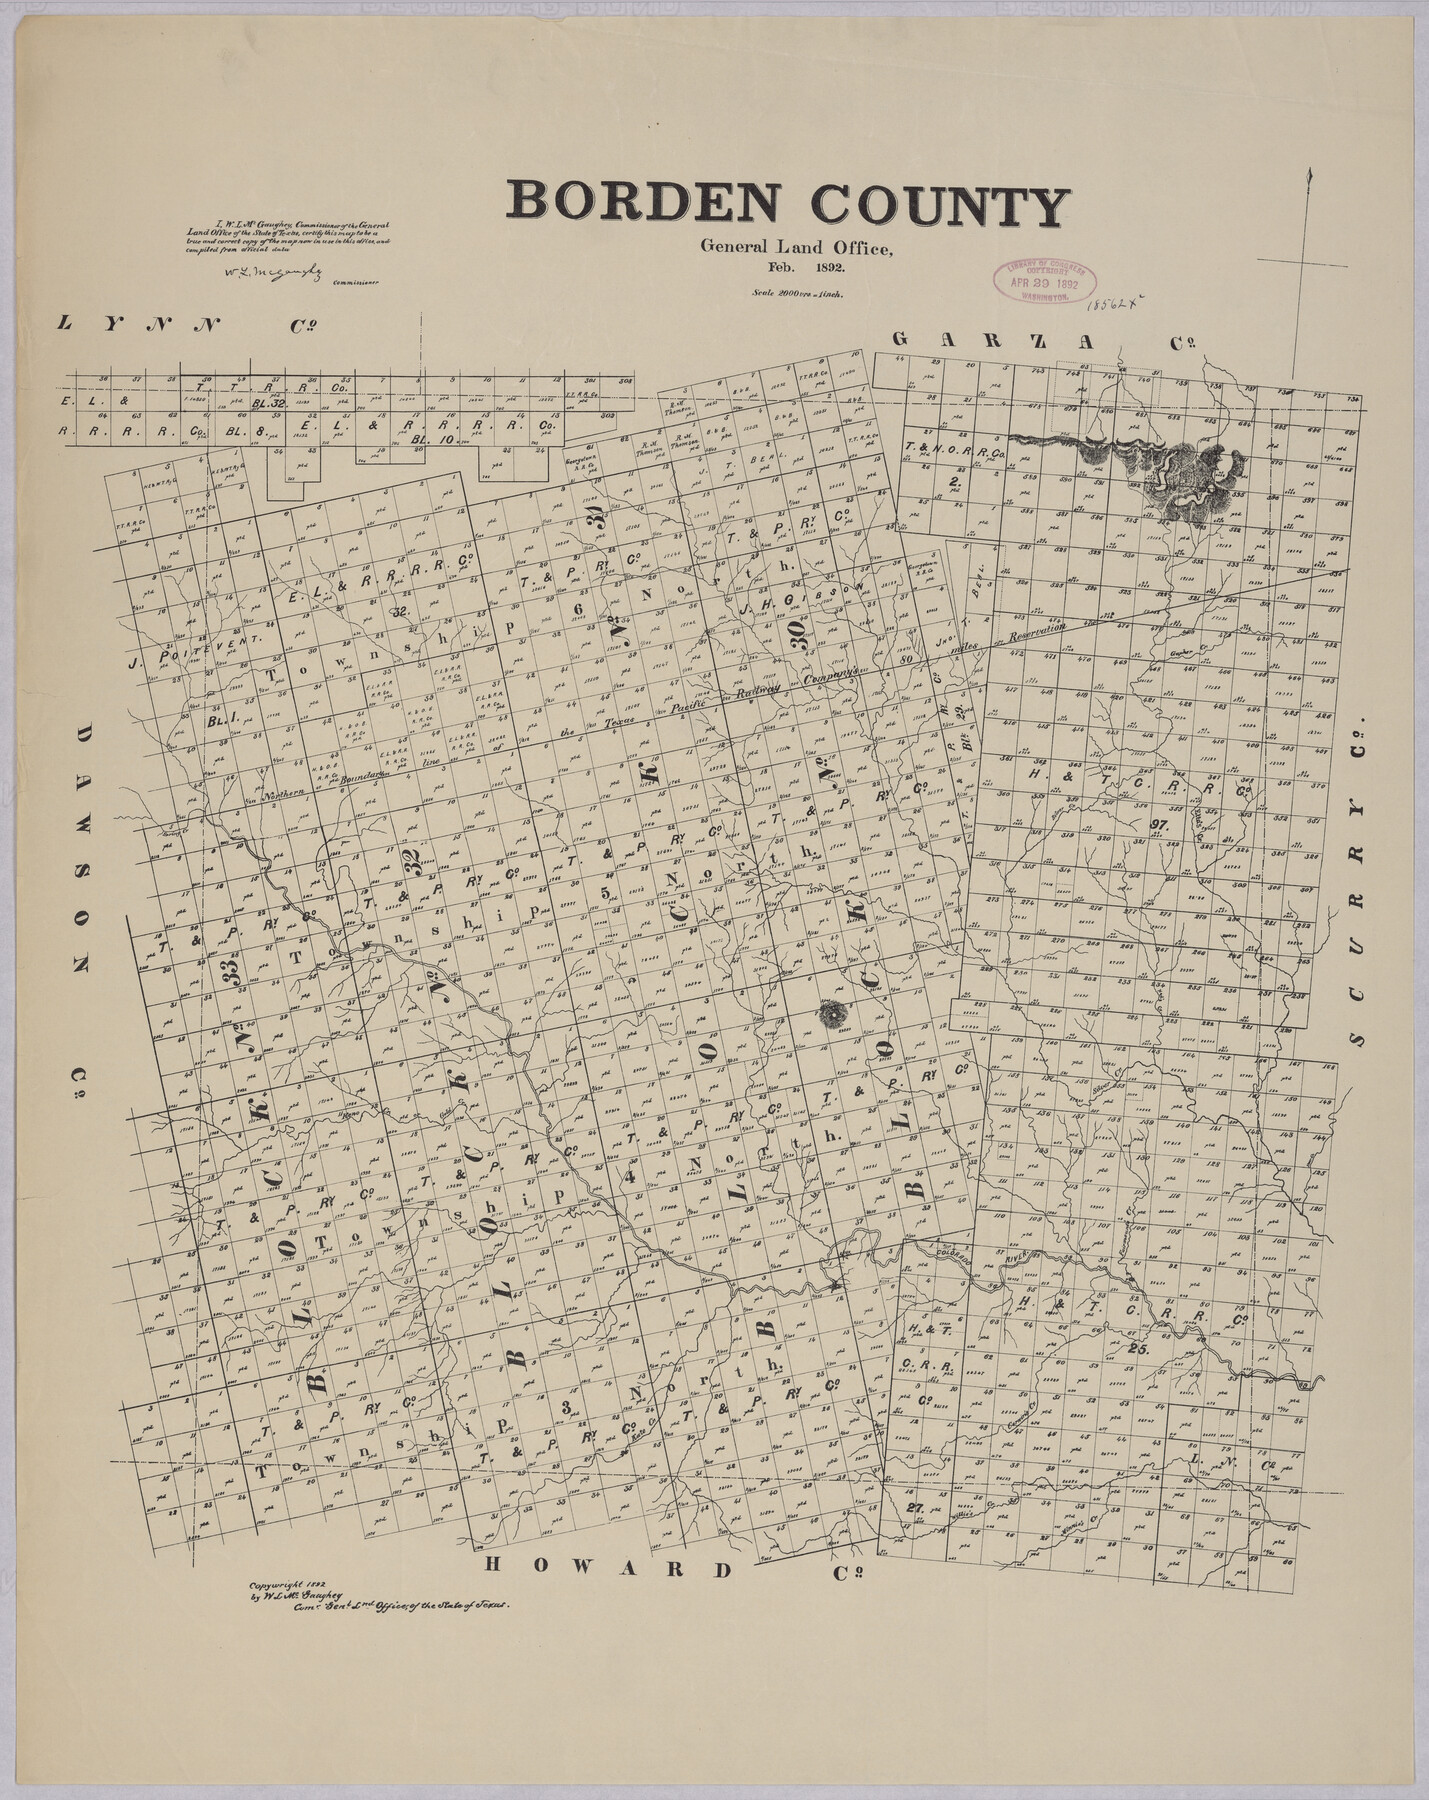 88909, Borden County, Library of Congress